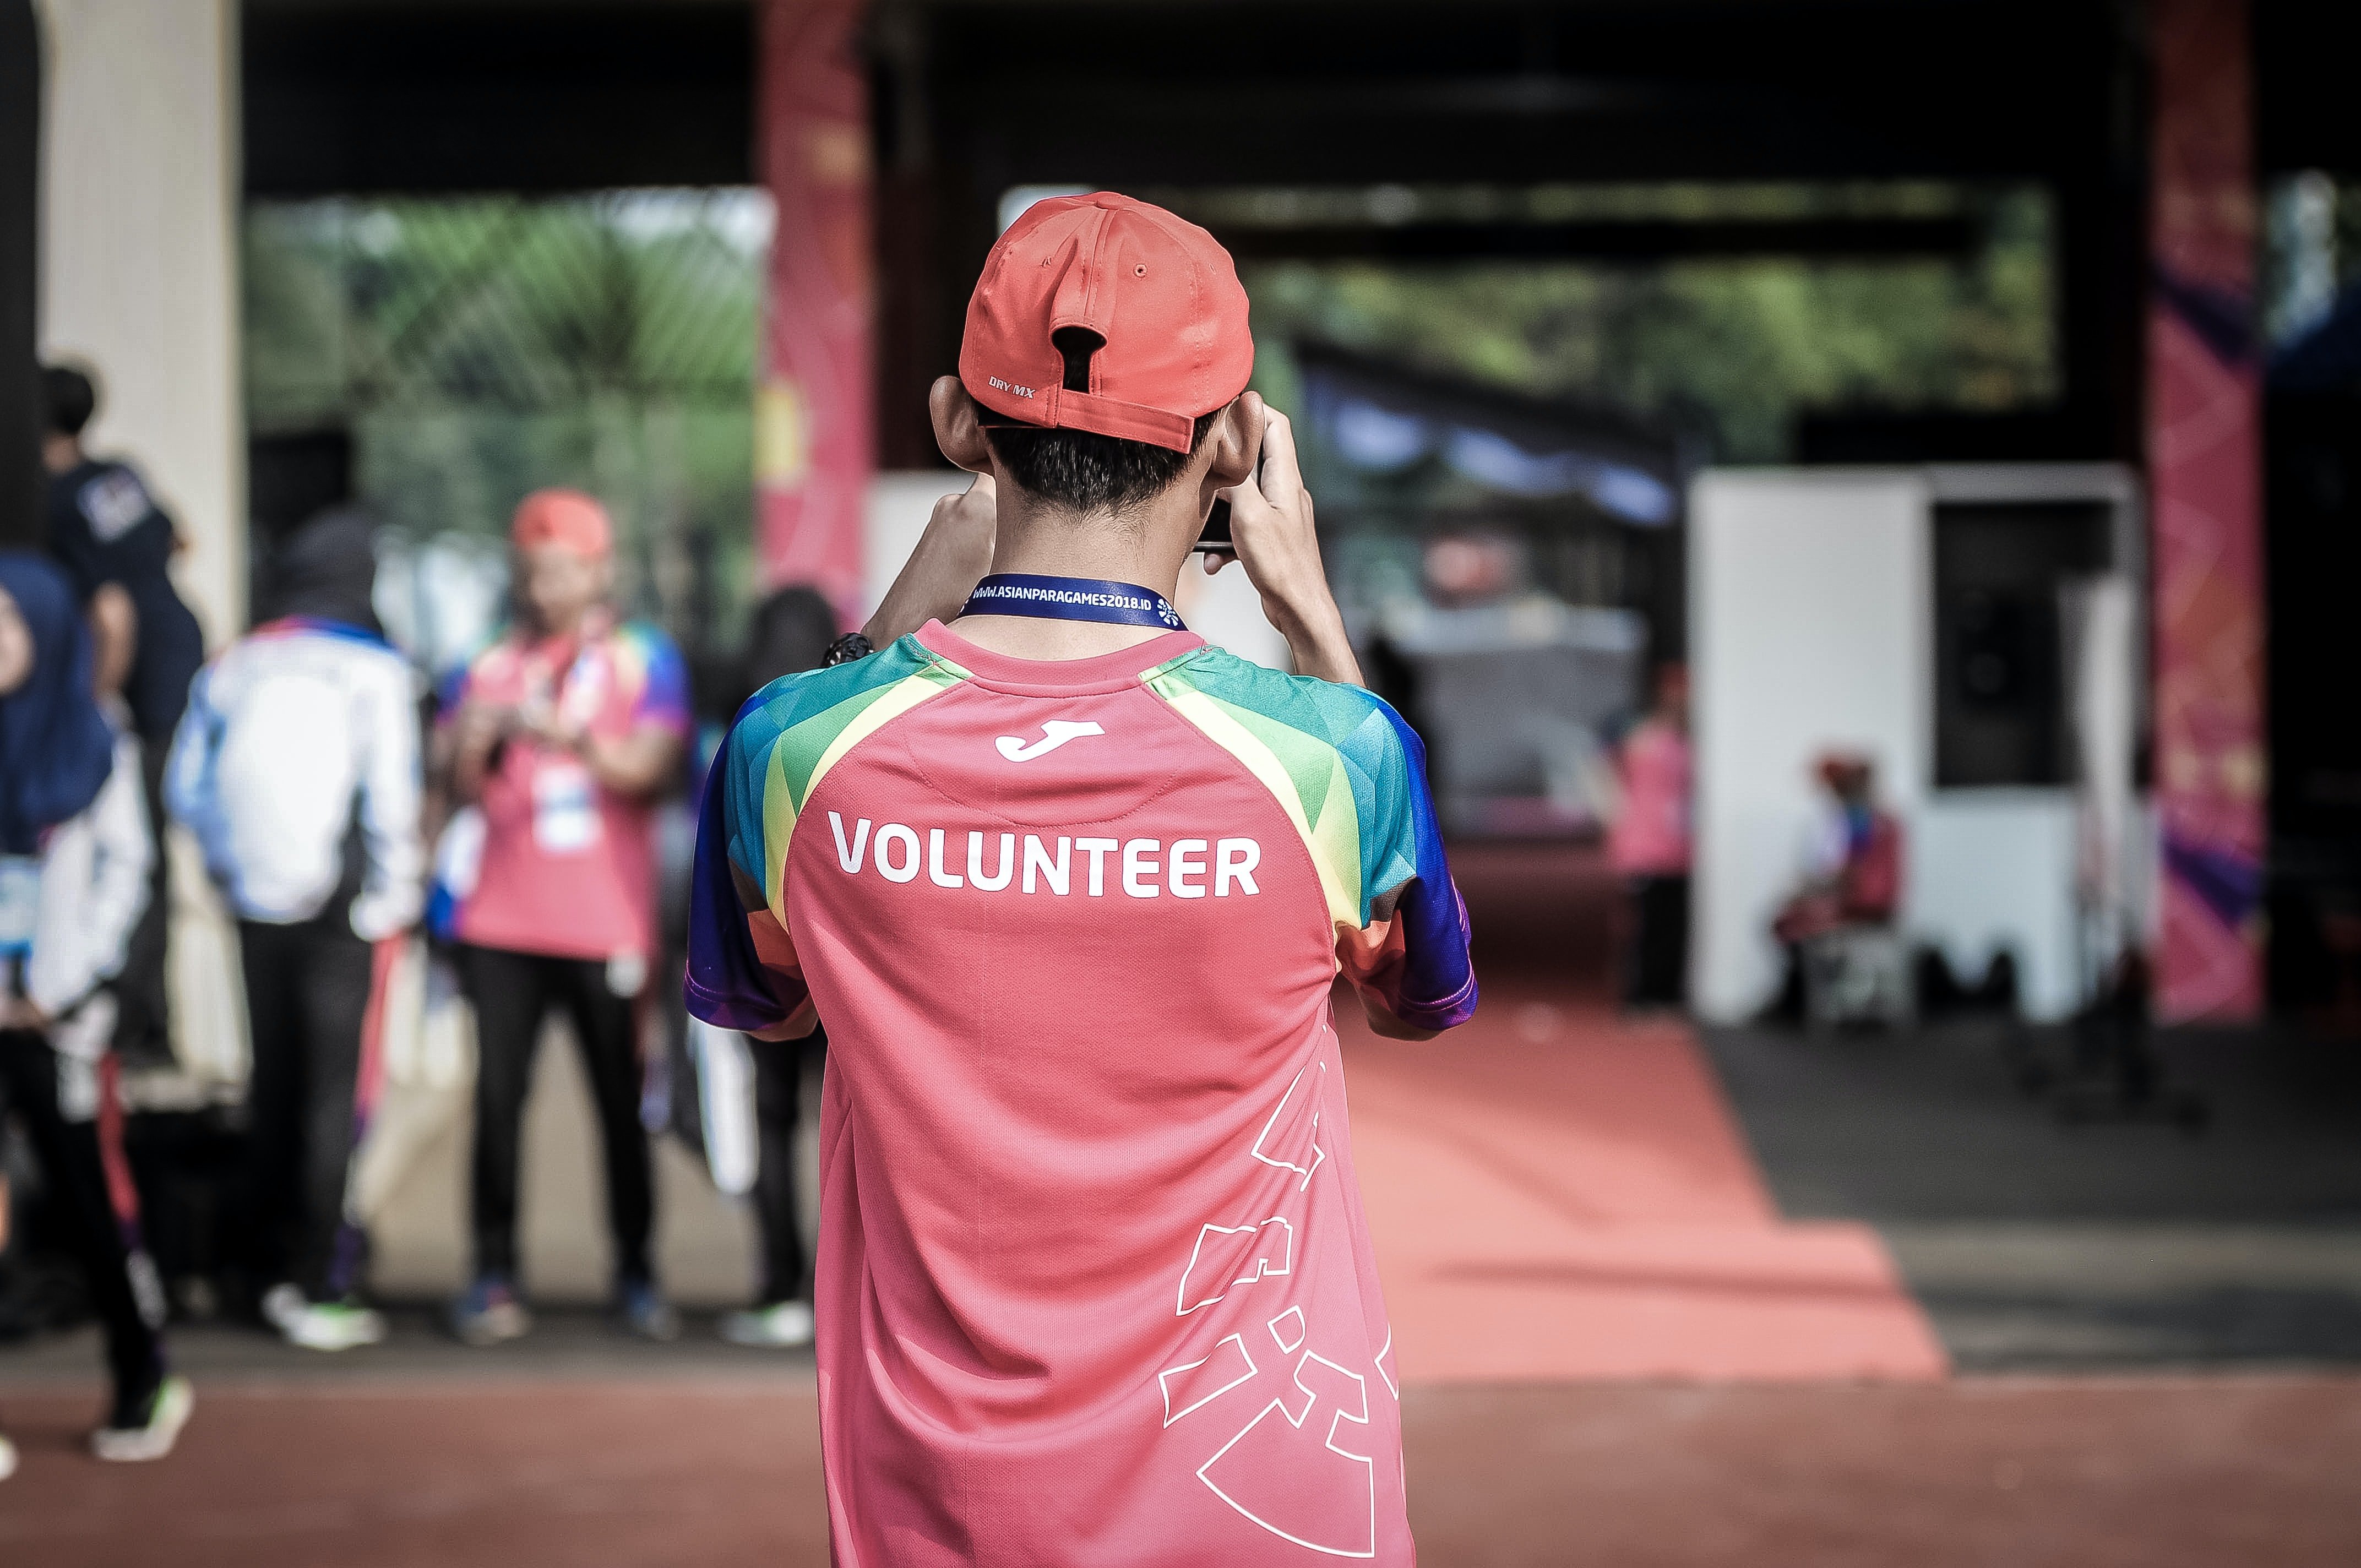 ¿Tenías pensado hacer un voluntariado este verano? Te explicamos la situación